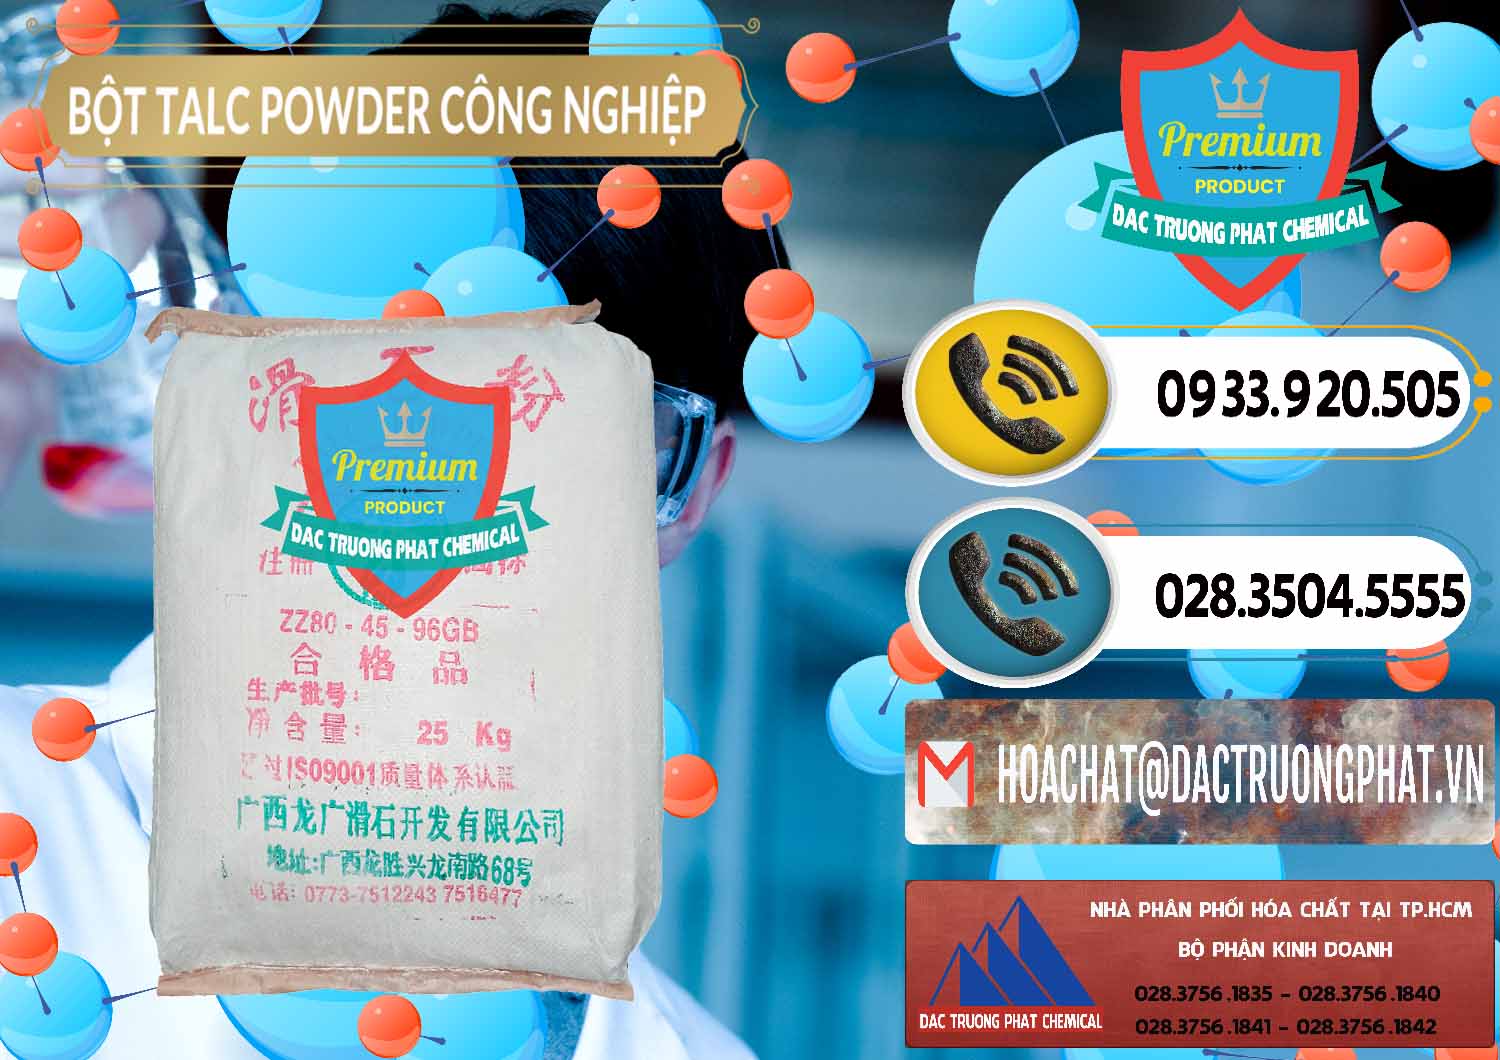 Chuyên cung ứng ( bán ) Bột Talc Powder Công Nghiệp Trung Quốc China - 0037 - Cung cấp ( phân phối ) hóa chất tại TP.HCM - hoachatdetnhuom.vn